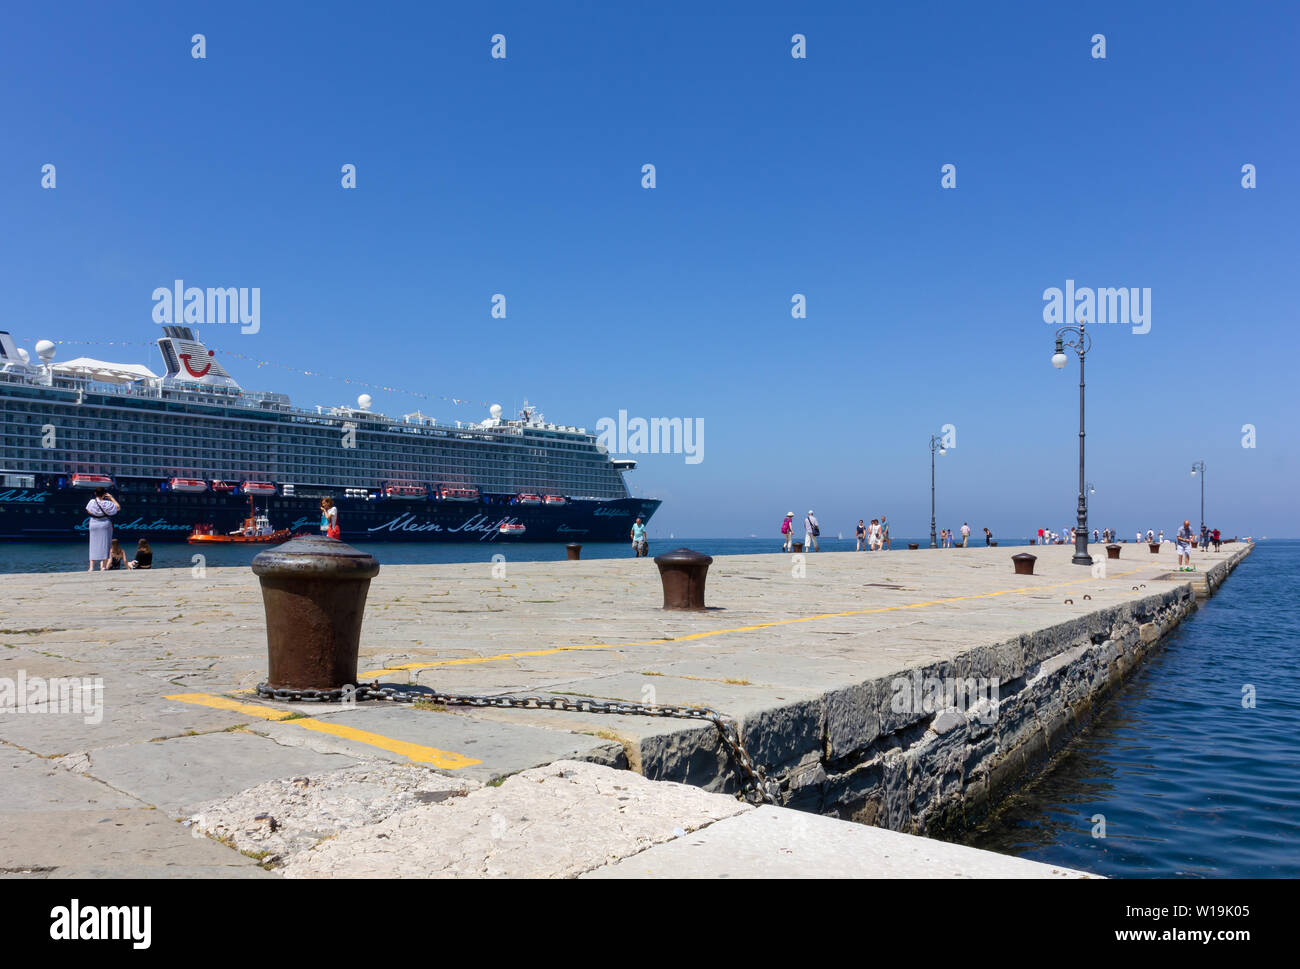 TRIESTE, Italia - 16 de junio de 2019: Los turistas paseando por el Audace pier en la ciudad de la costa y el buque de crucero Mein Schiff 6 amarrados junto a ella Foto de stock